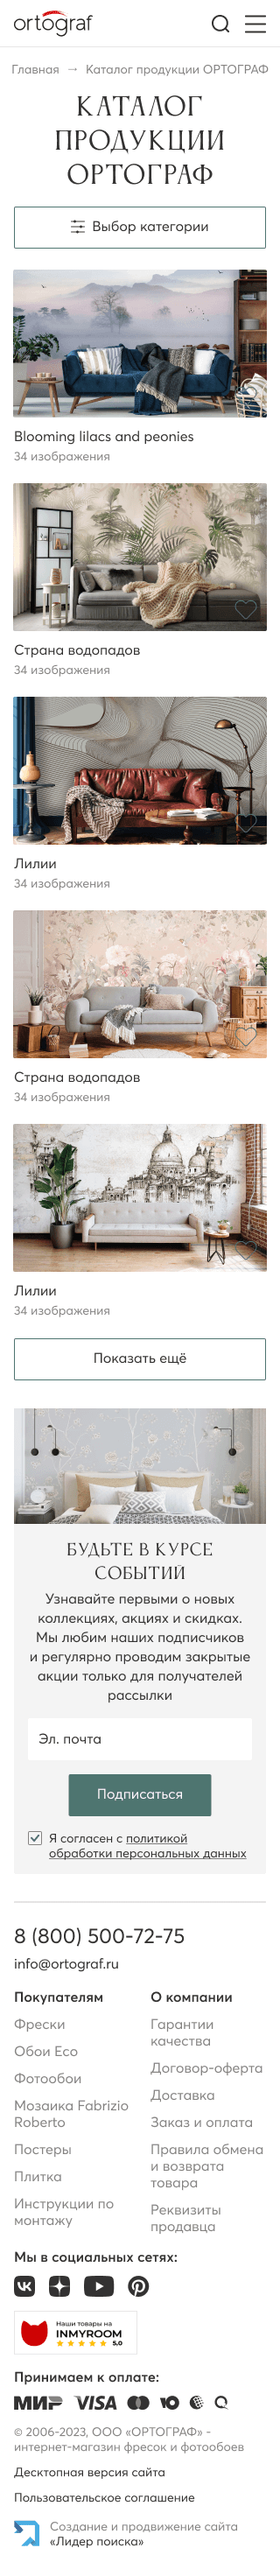 Страница каталога сайта ortograf.ru для мобильных устройств